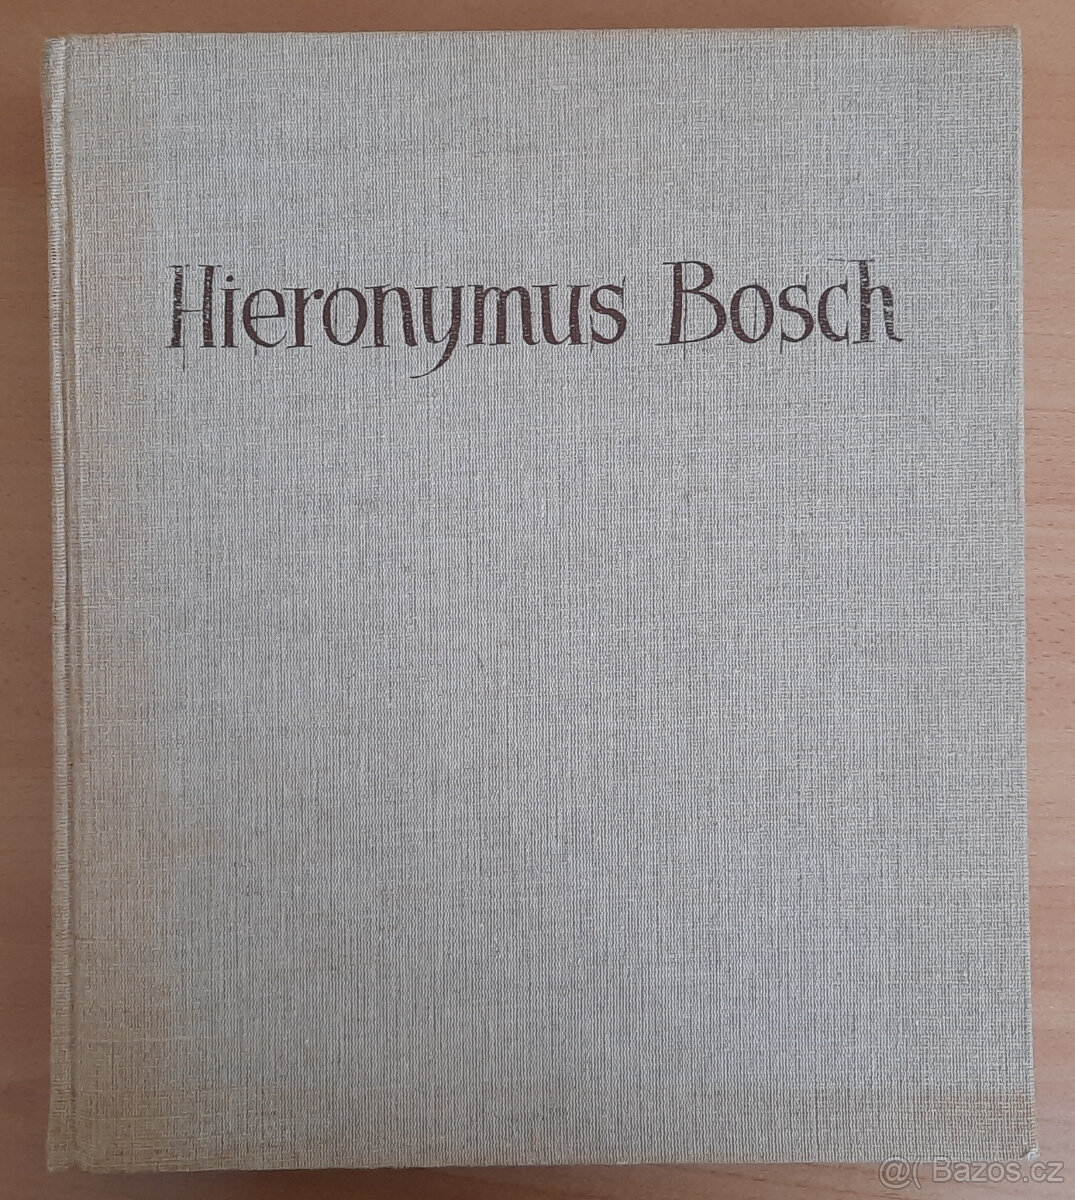 Dílo Hieronyma Bosche - velká obrazová kniha